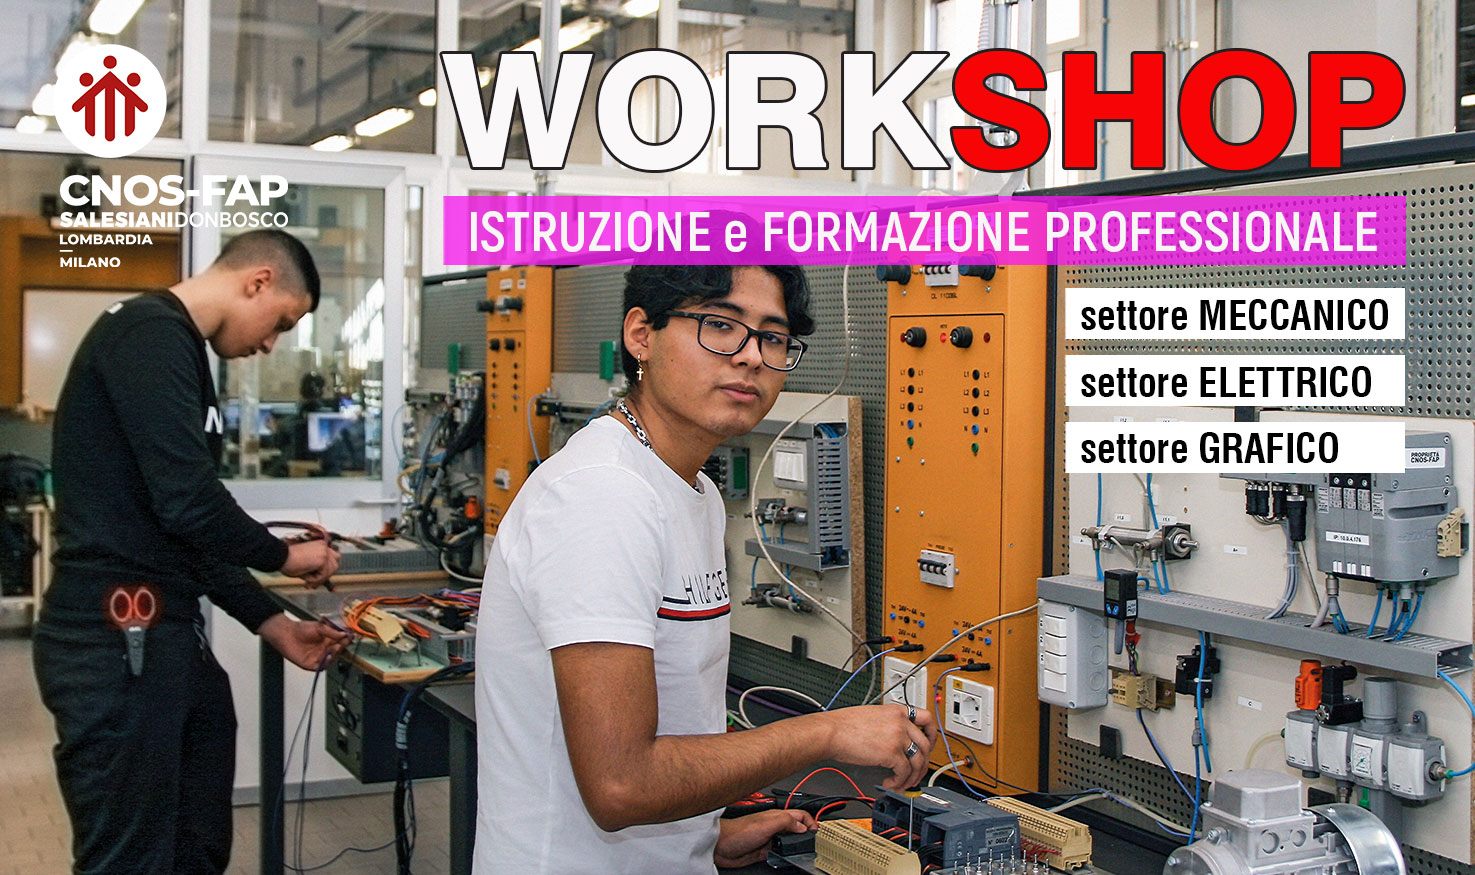 WorkShop Formazione Professionale - Salesiani Milano